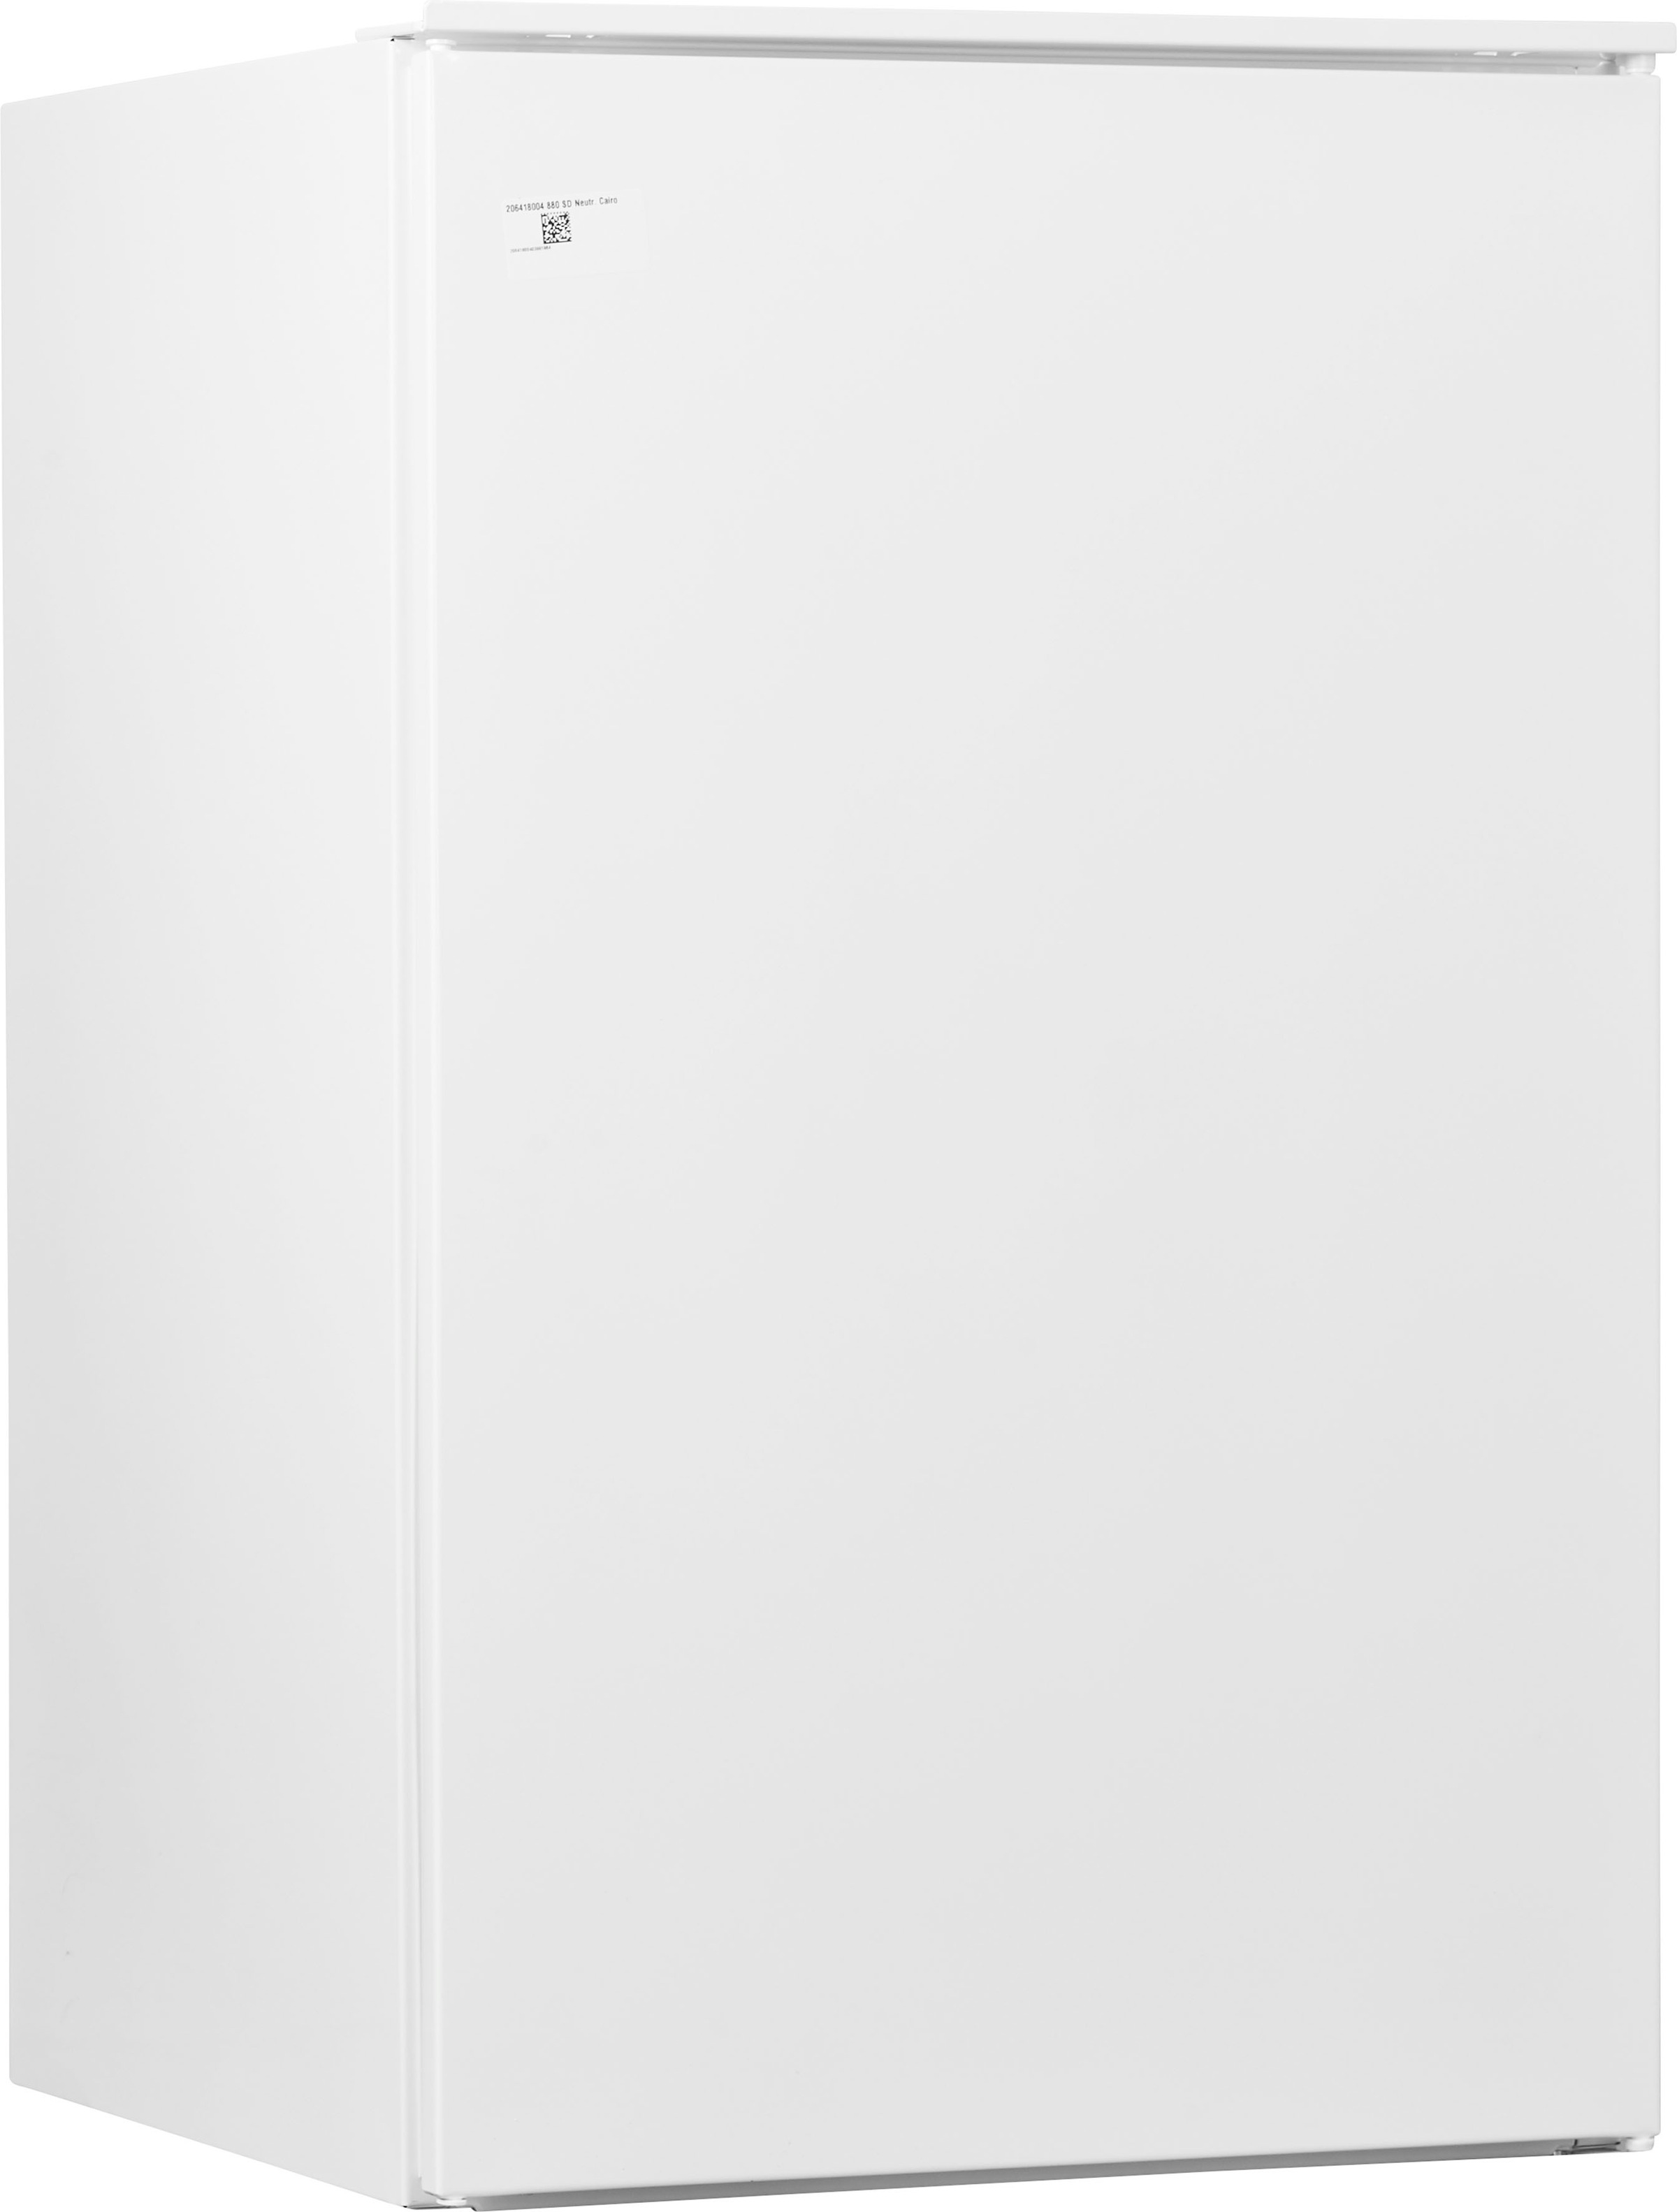 AEG Einbaukühlschrank »SKE788EAAS«, SKE788EAAS, 87,3 cm hoch, 54,8 cm breit  jetzt kaufen bei OTTO